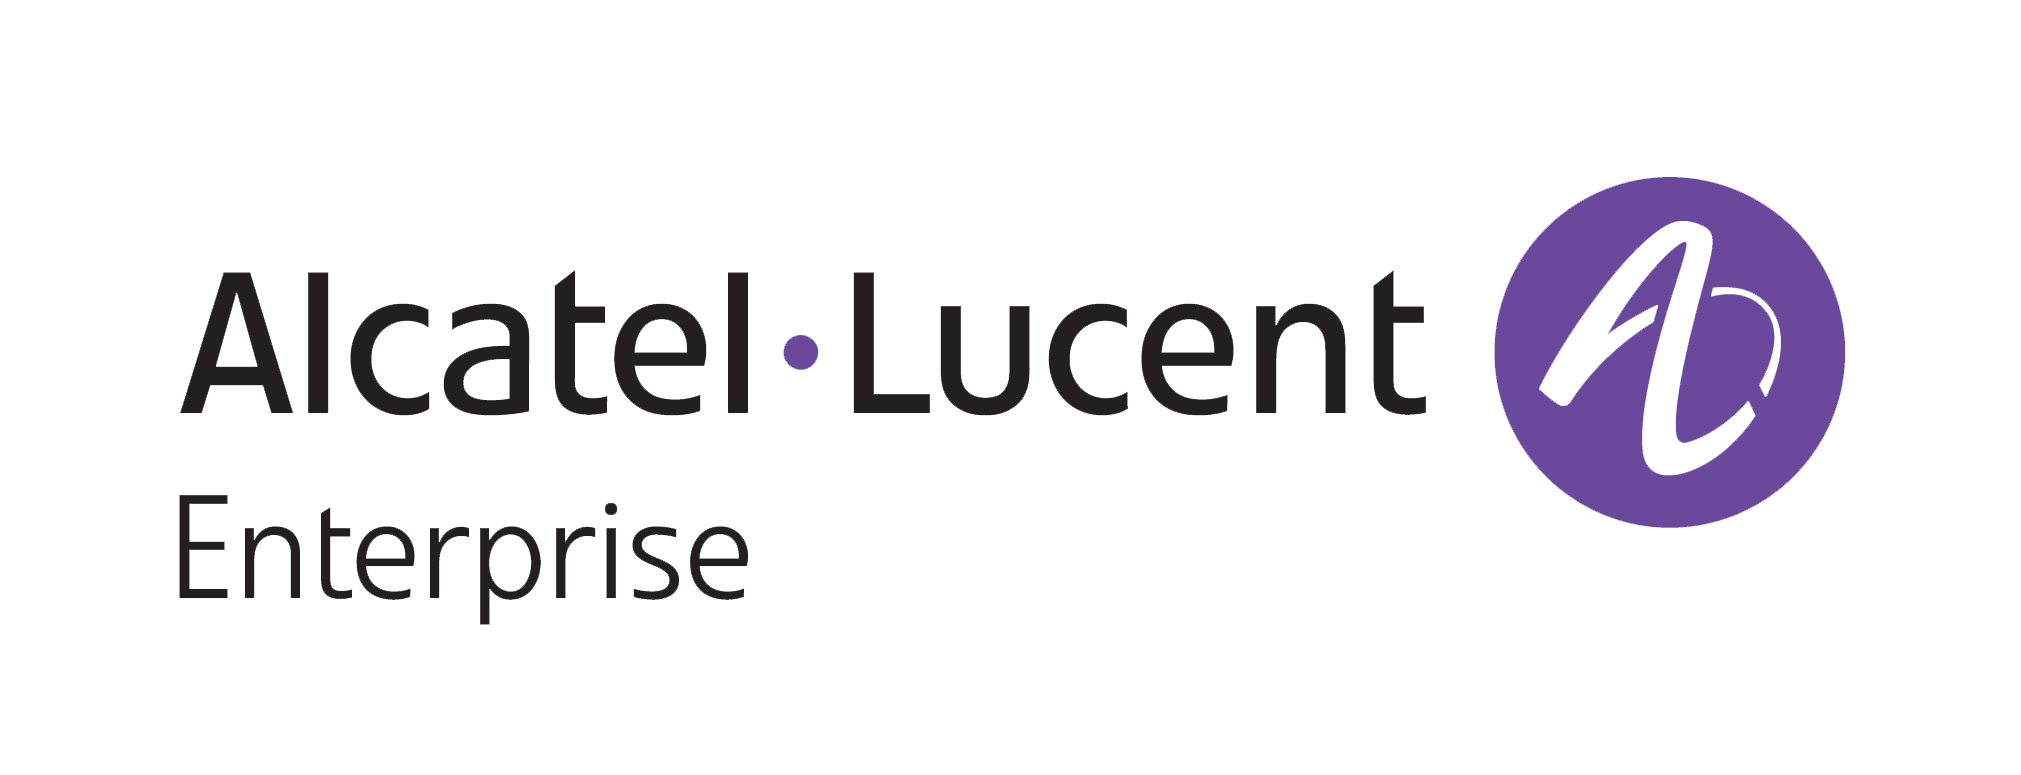 Alcatel-Lucent Enterprise (ALE)